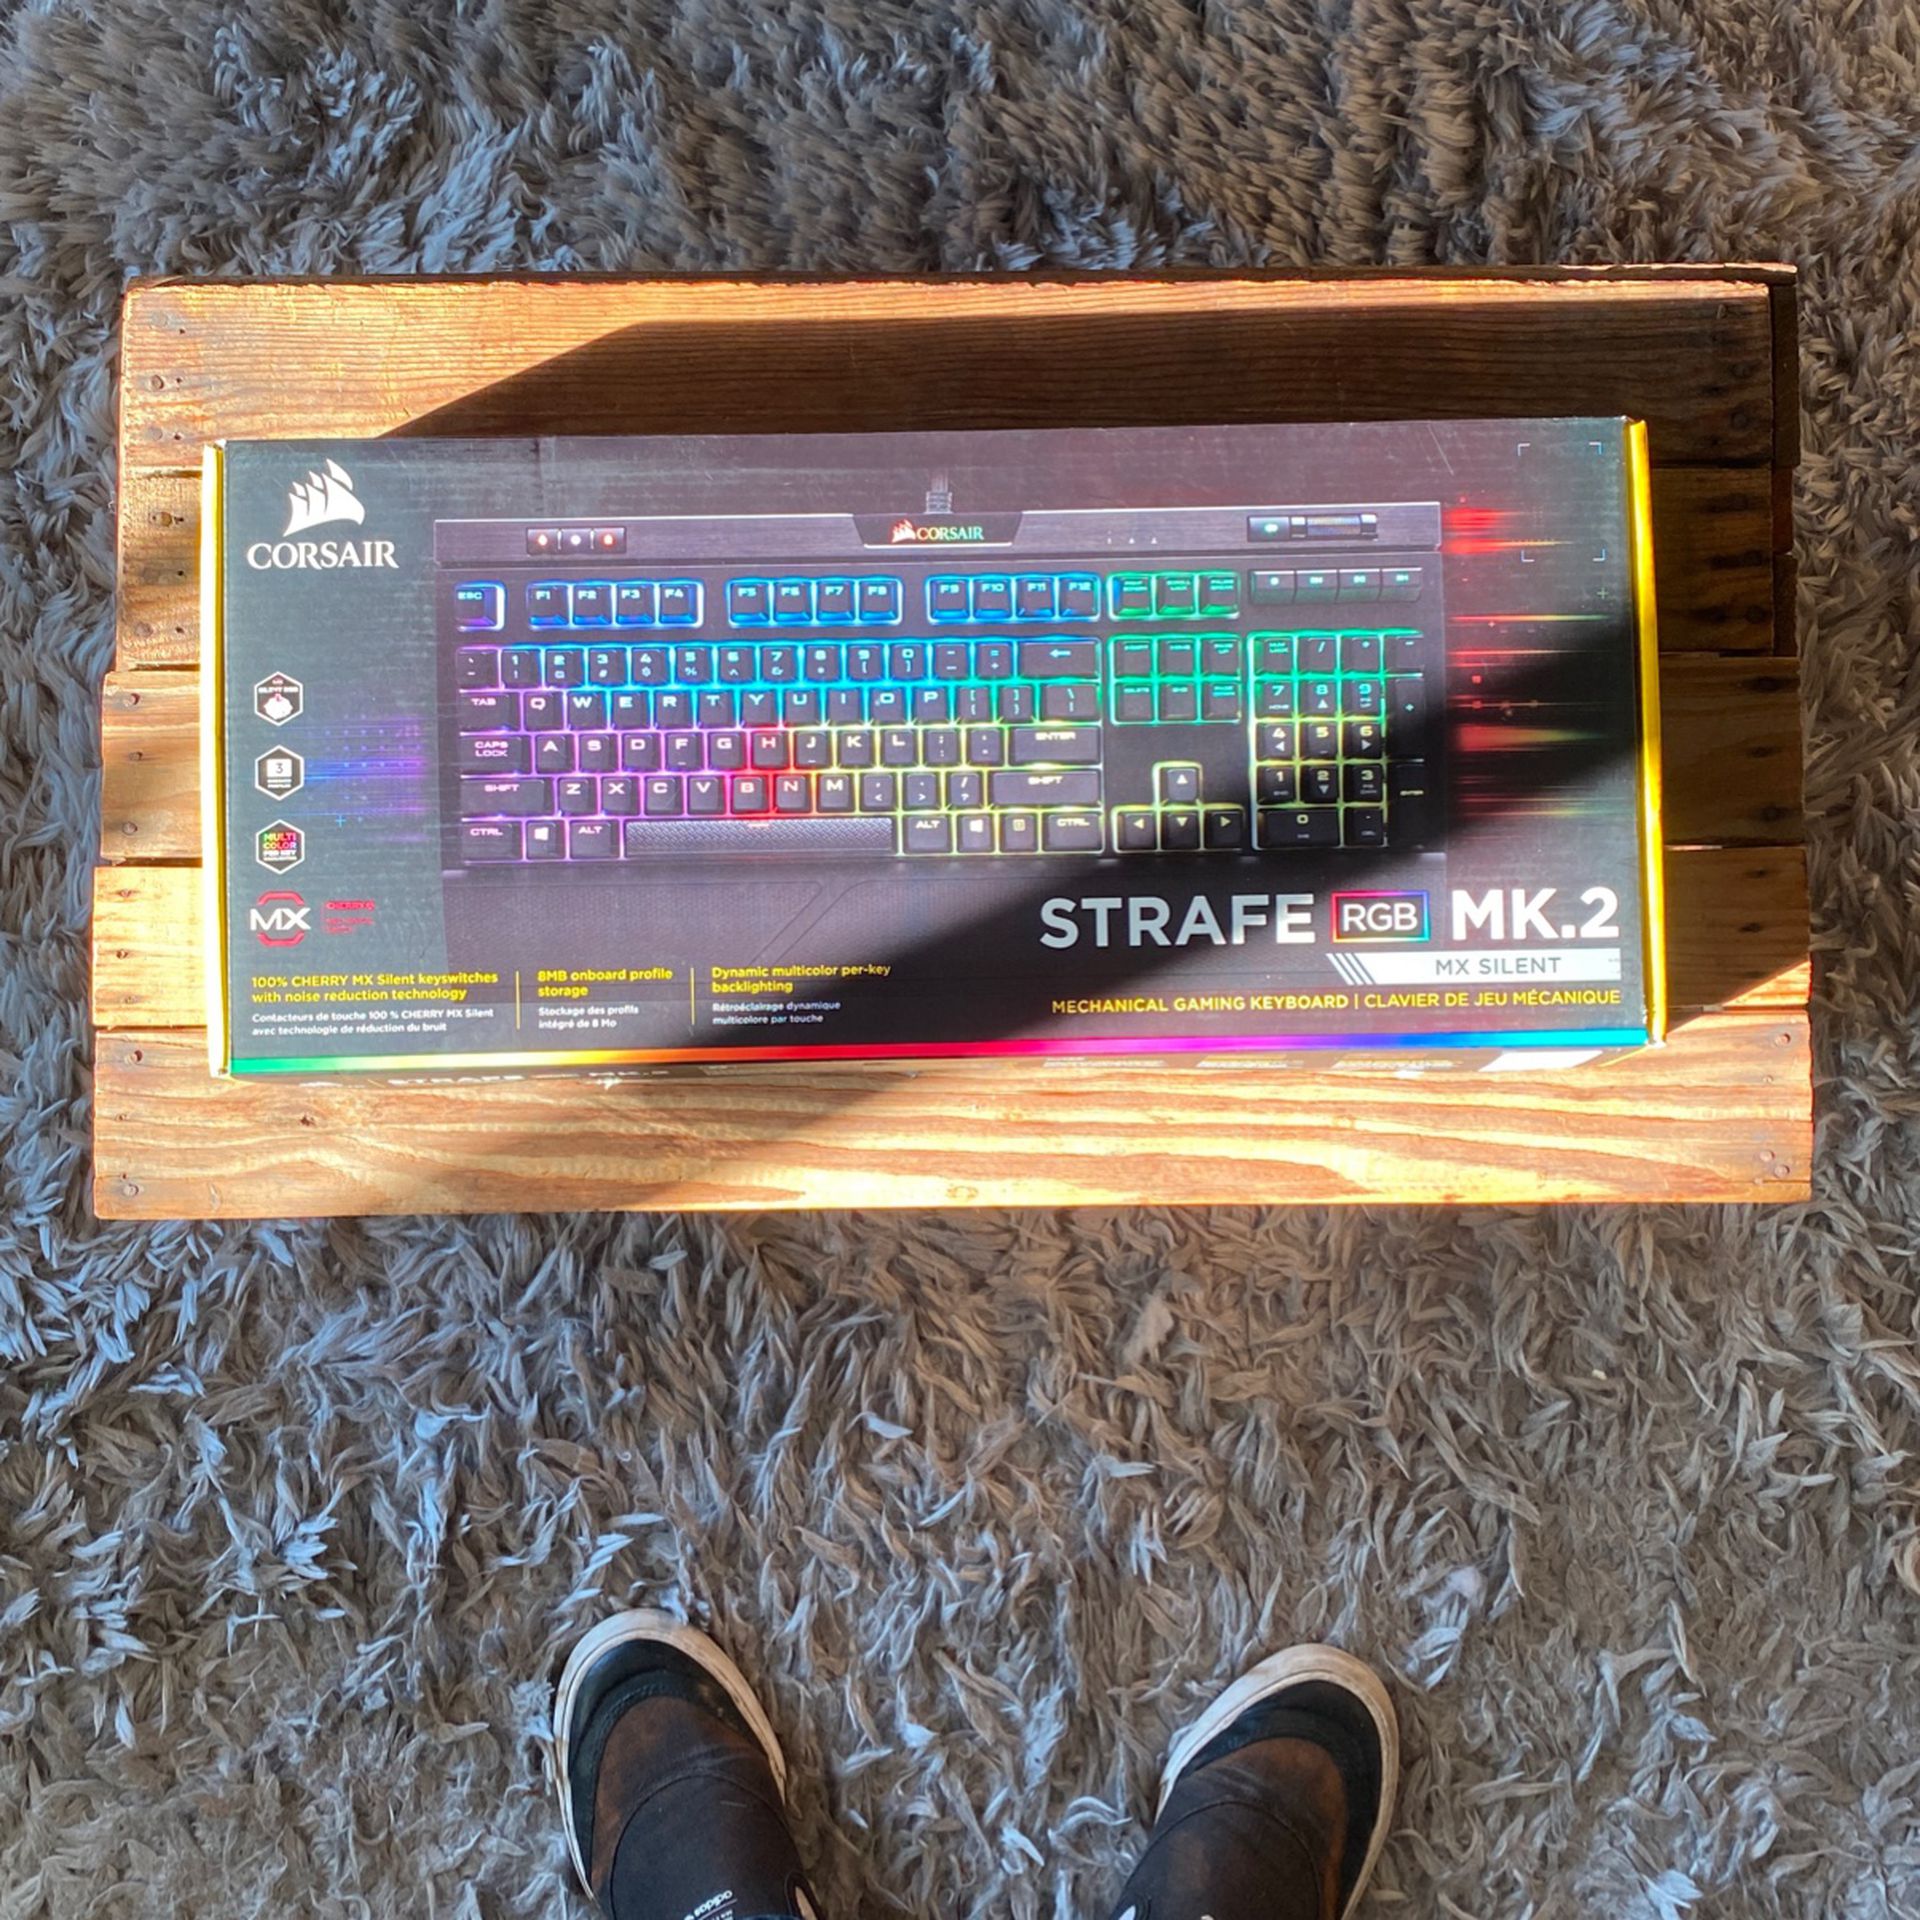 CORSAIR Strafe RGB MK.2 Mechanical Gaming Keyboard